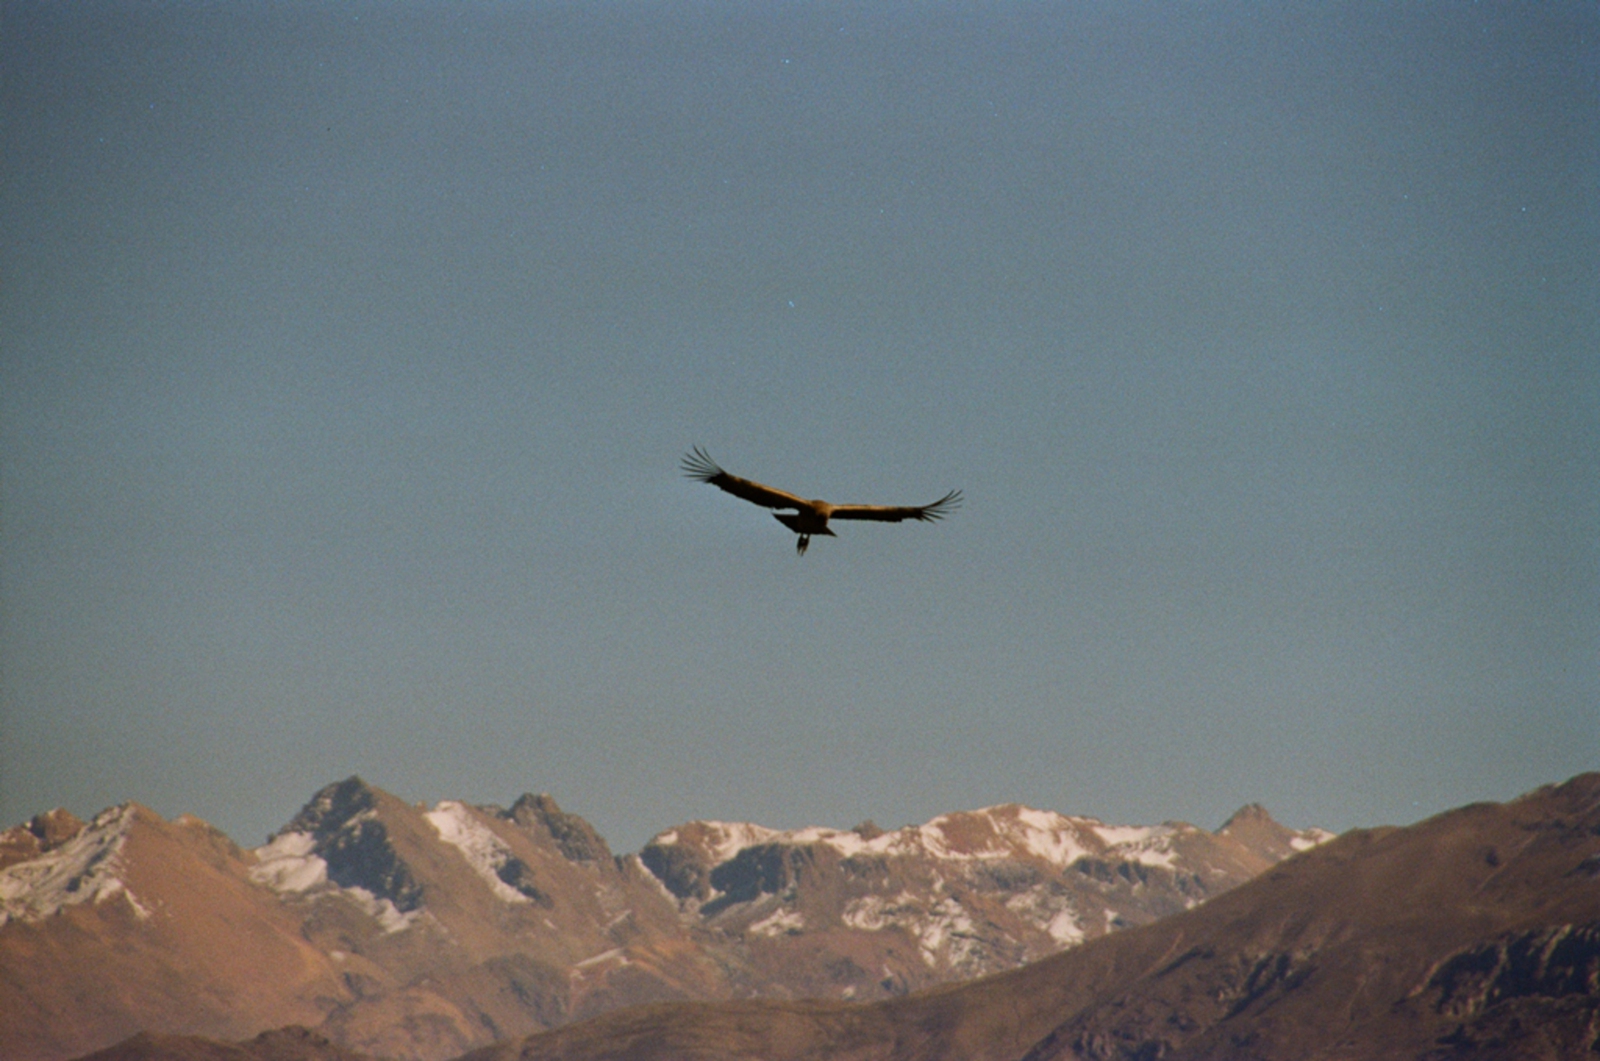 Colca Canyon: Condor